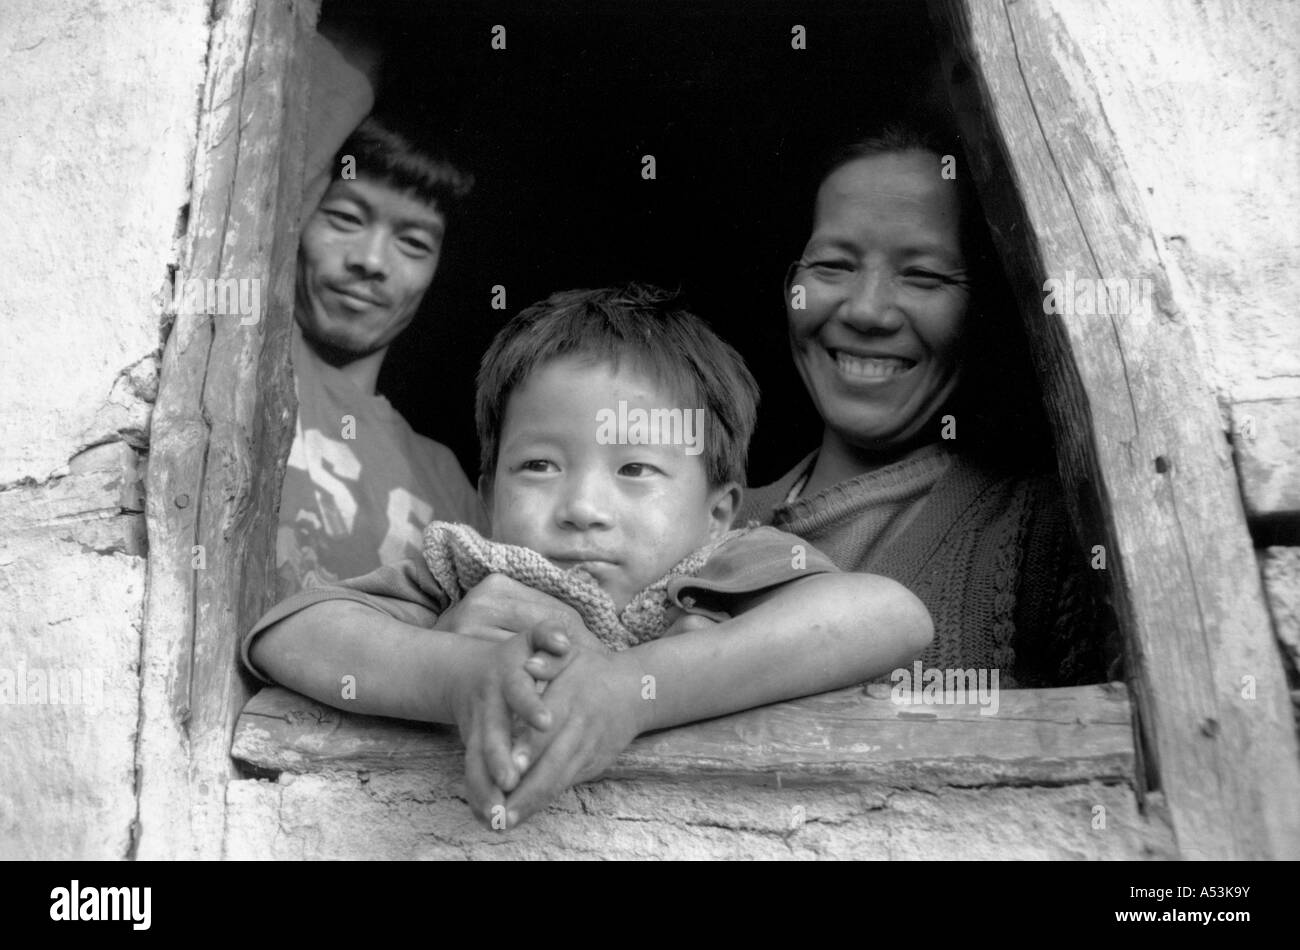 Painet ja1231 007 blanco y negro de la familia inmigrante nepalí kalimpong india país nación en desarrollo económicamente desarrollado Foto de stock